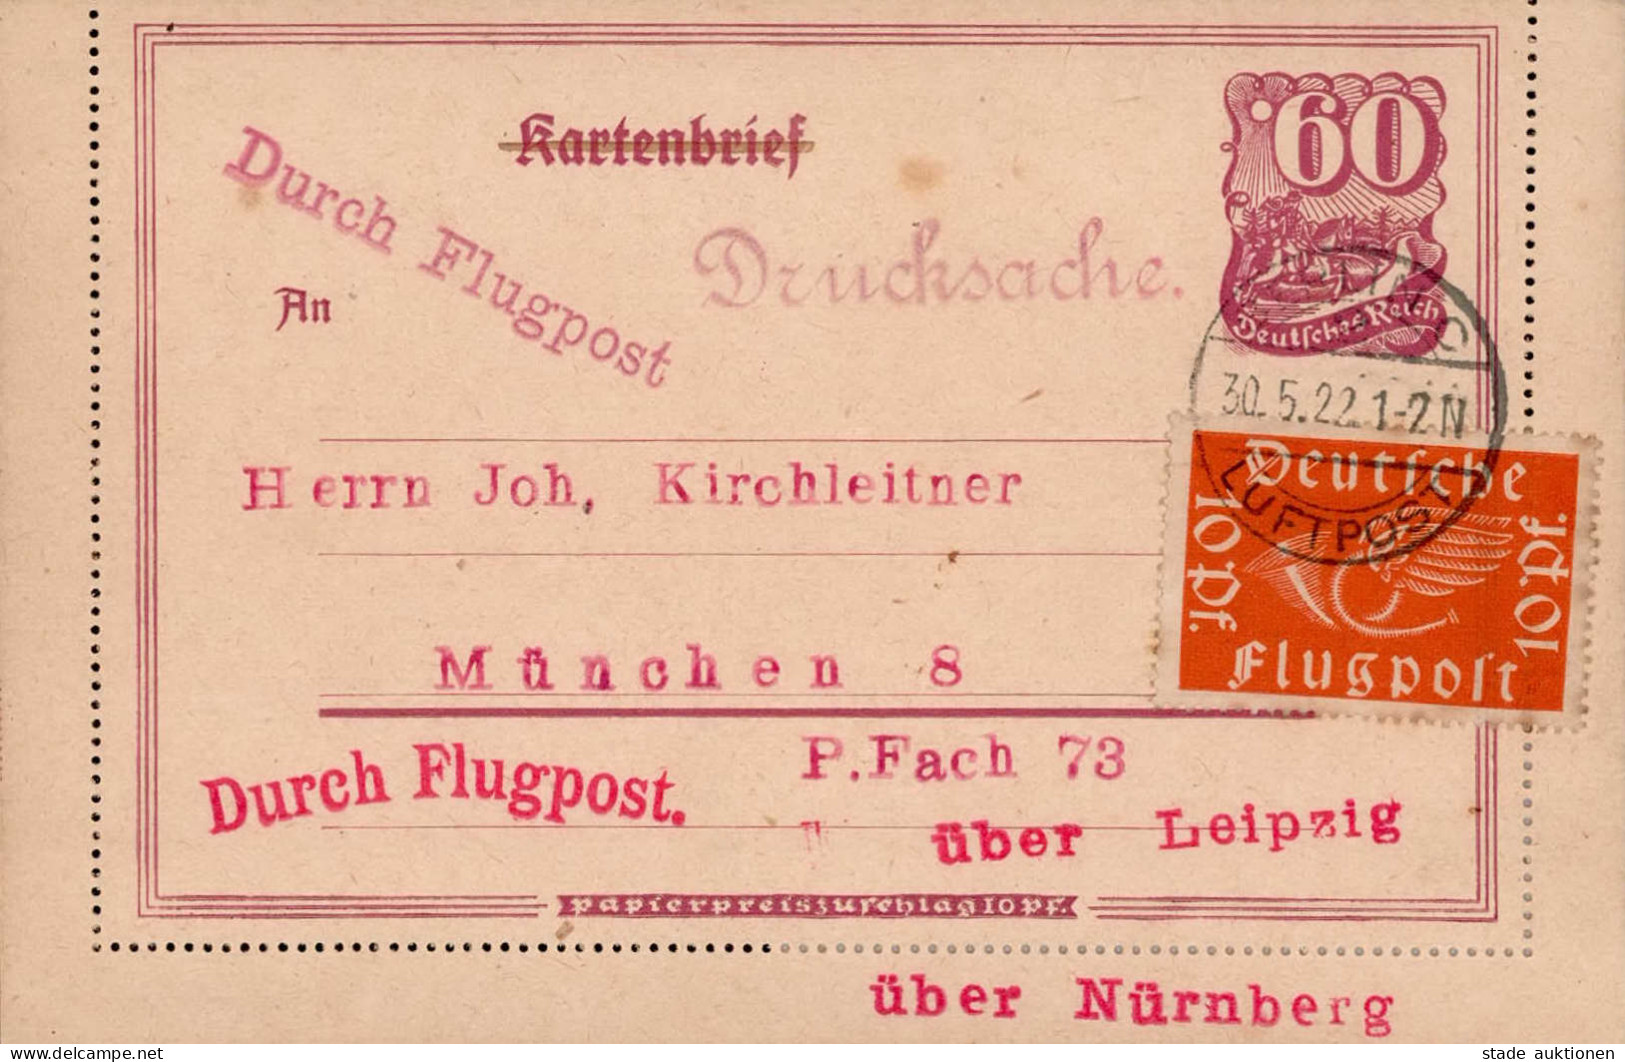 Deutsches Reich Berlin Luftpost über Leipzig Nach München 1922 I-II - Guerre 1914-18